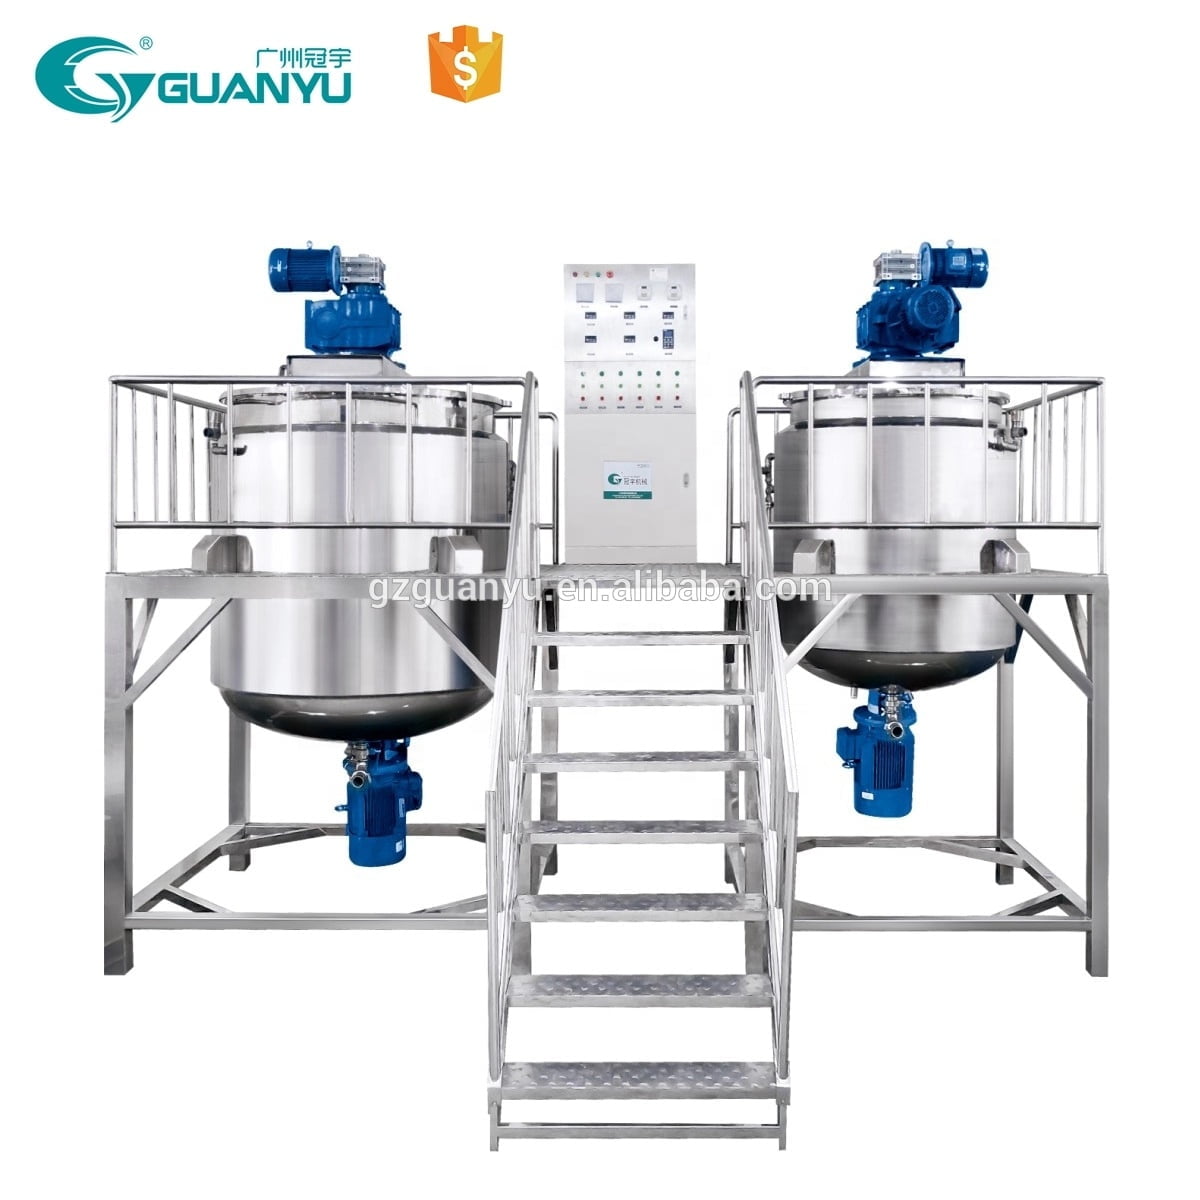 Best Mixing Tank Liquid Detergent Mixer Chemical Liquid Soap Mixer Company - GUANYU